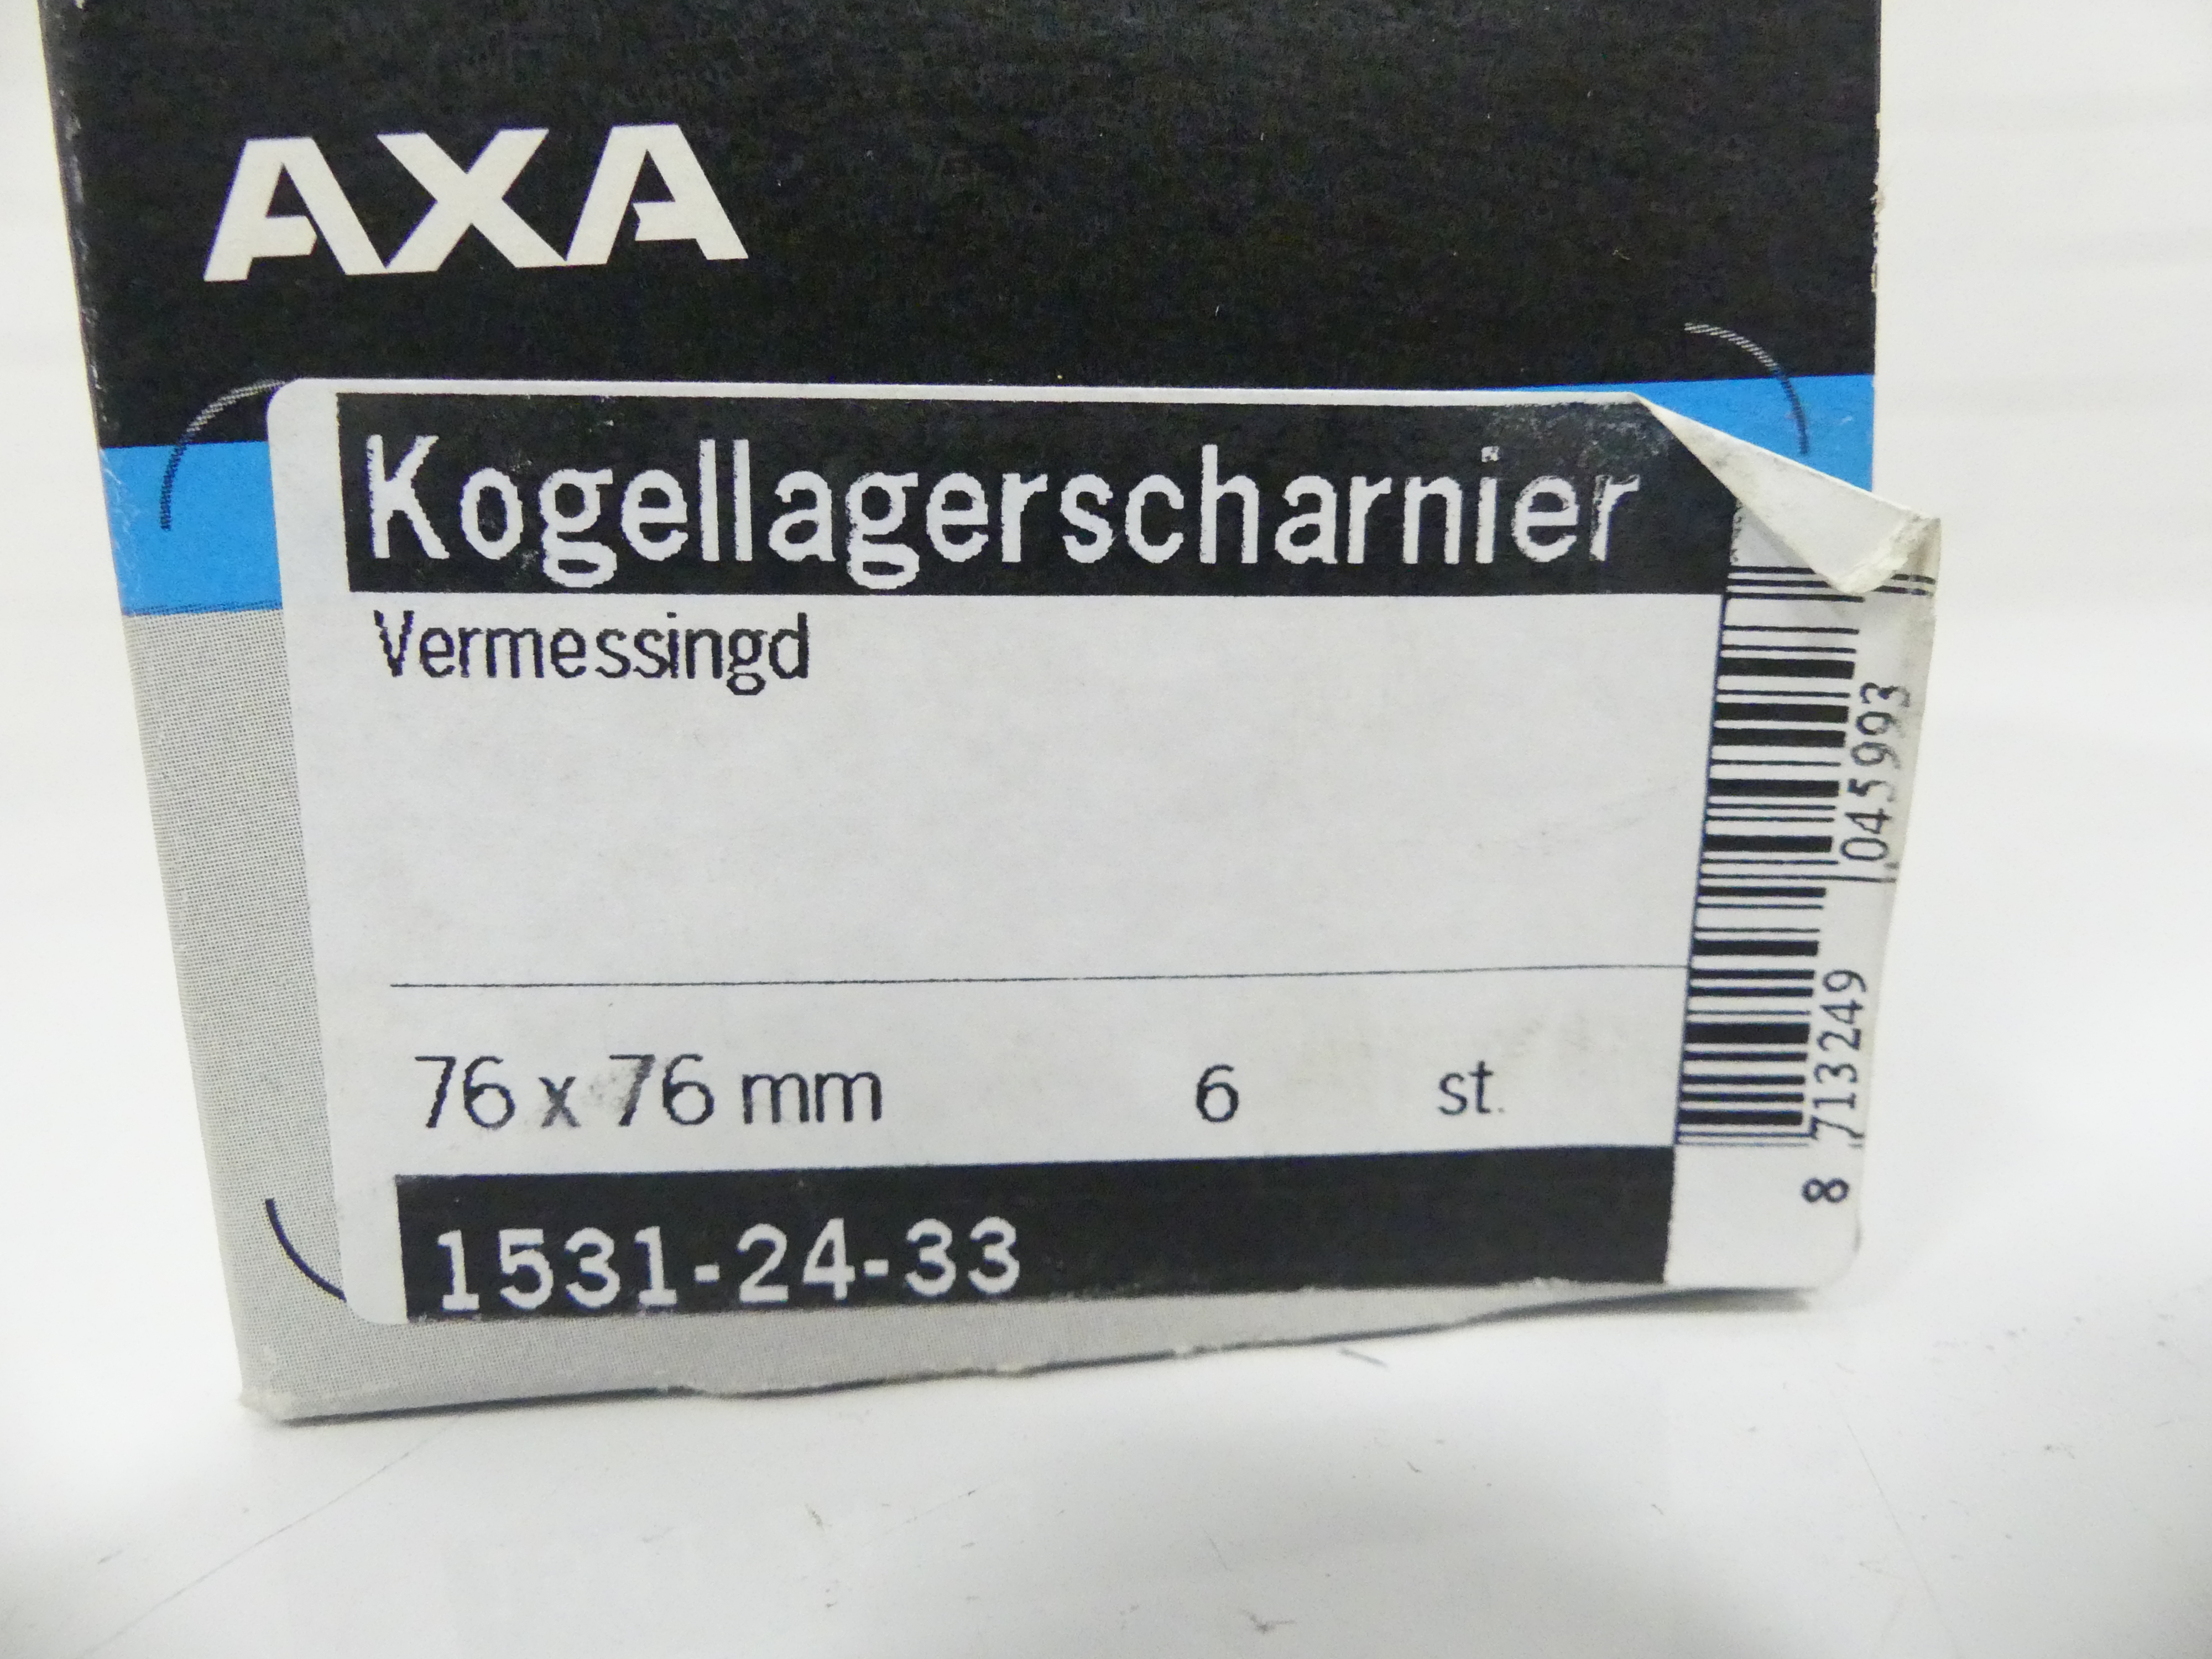 6x Axa kogellagerscharnier vermessingd 76x76 mm